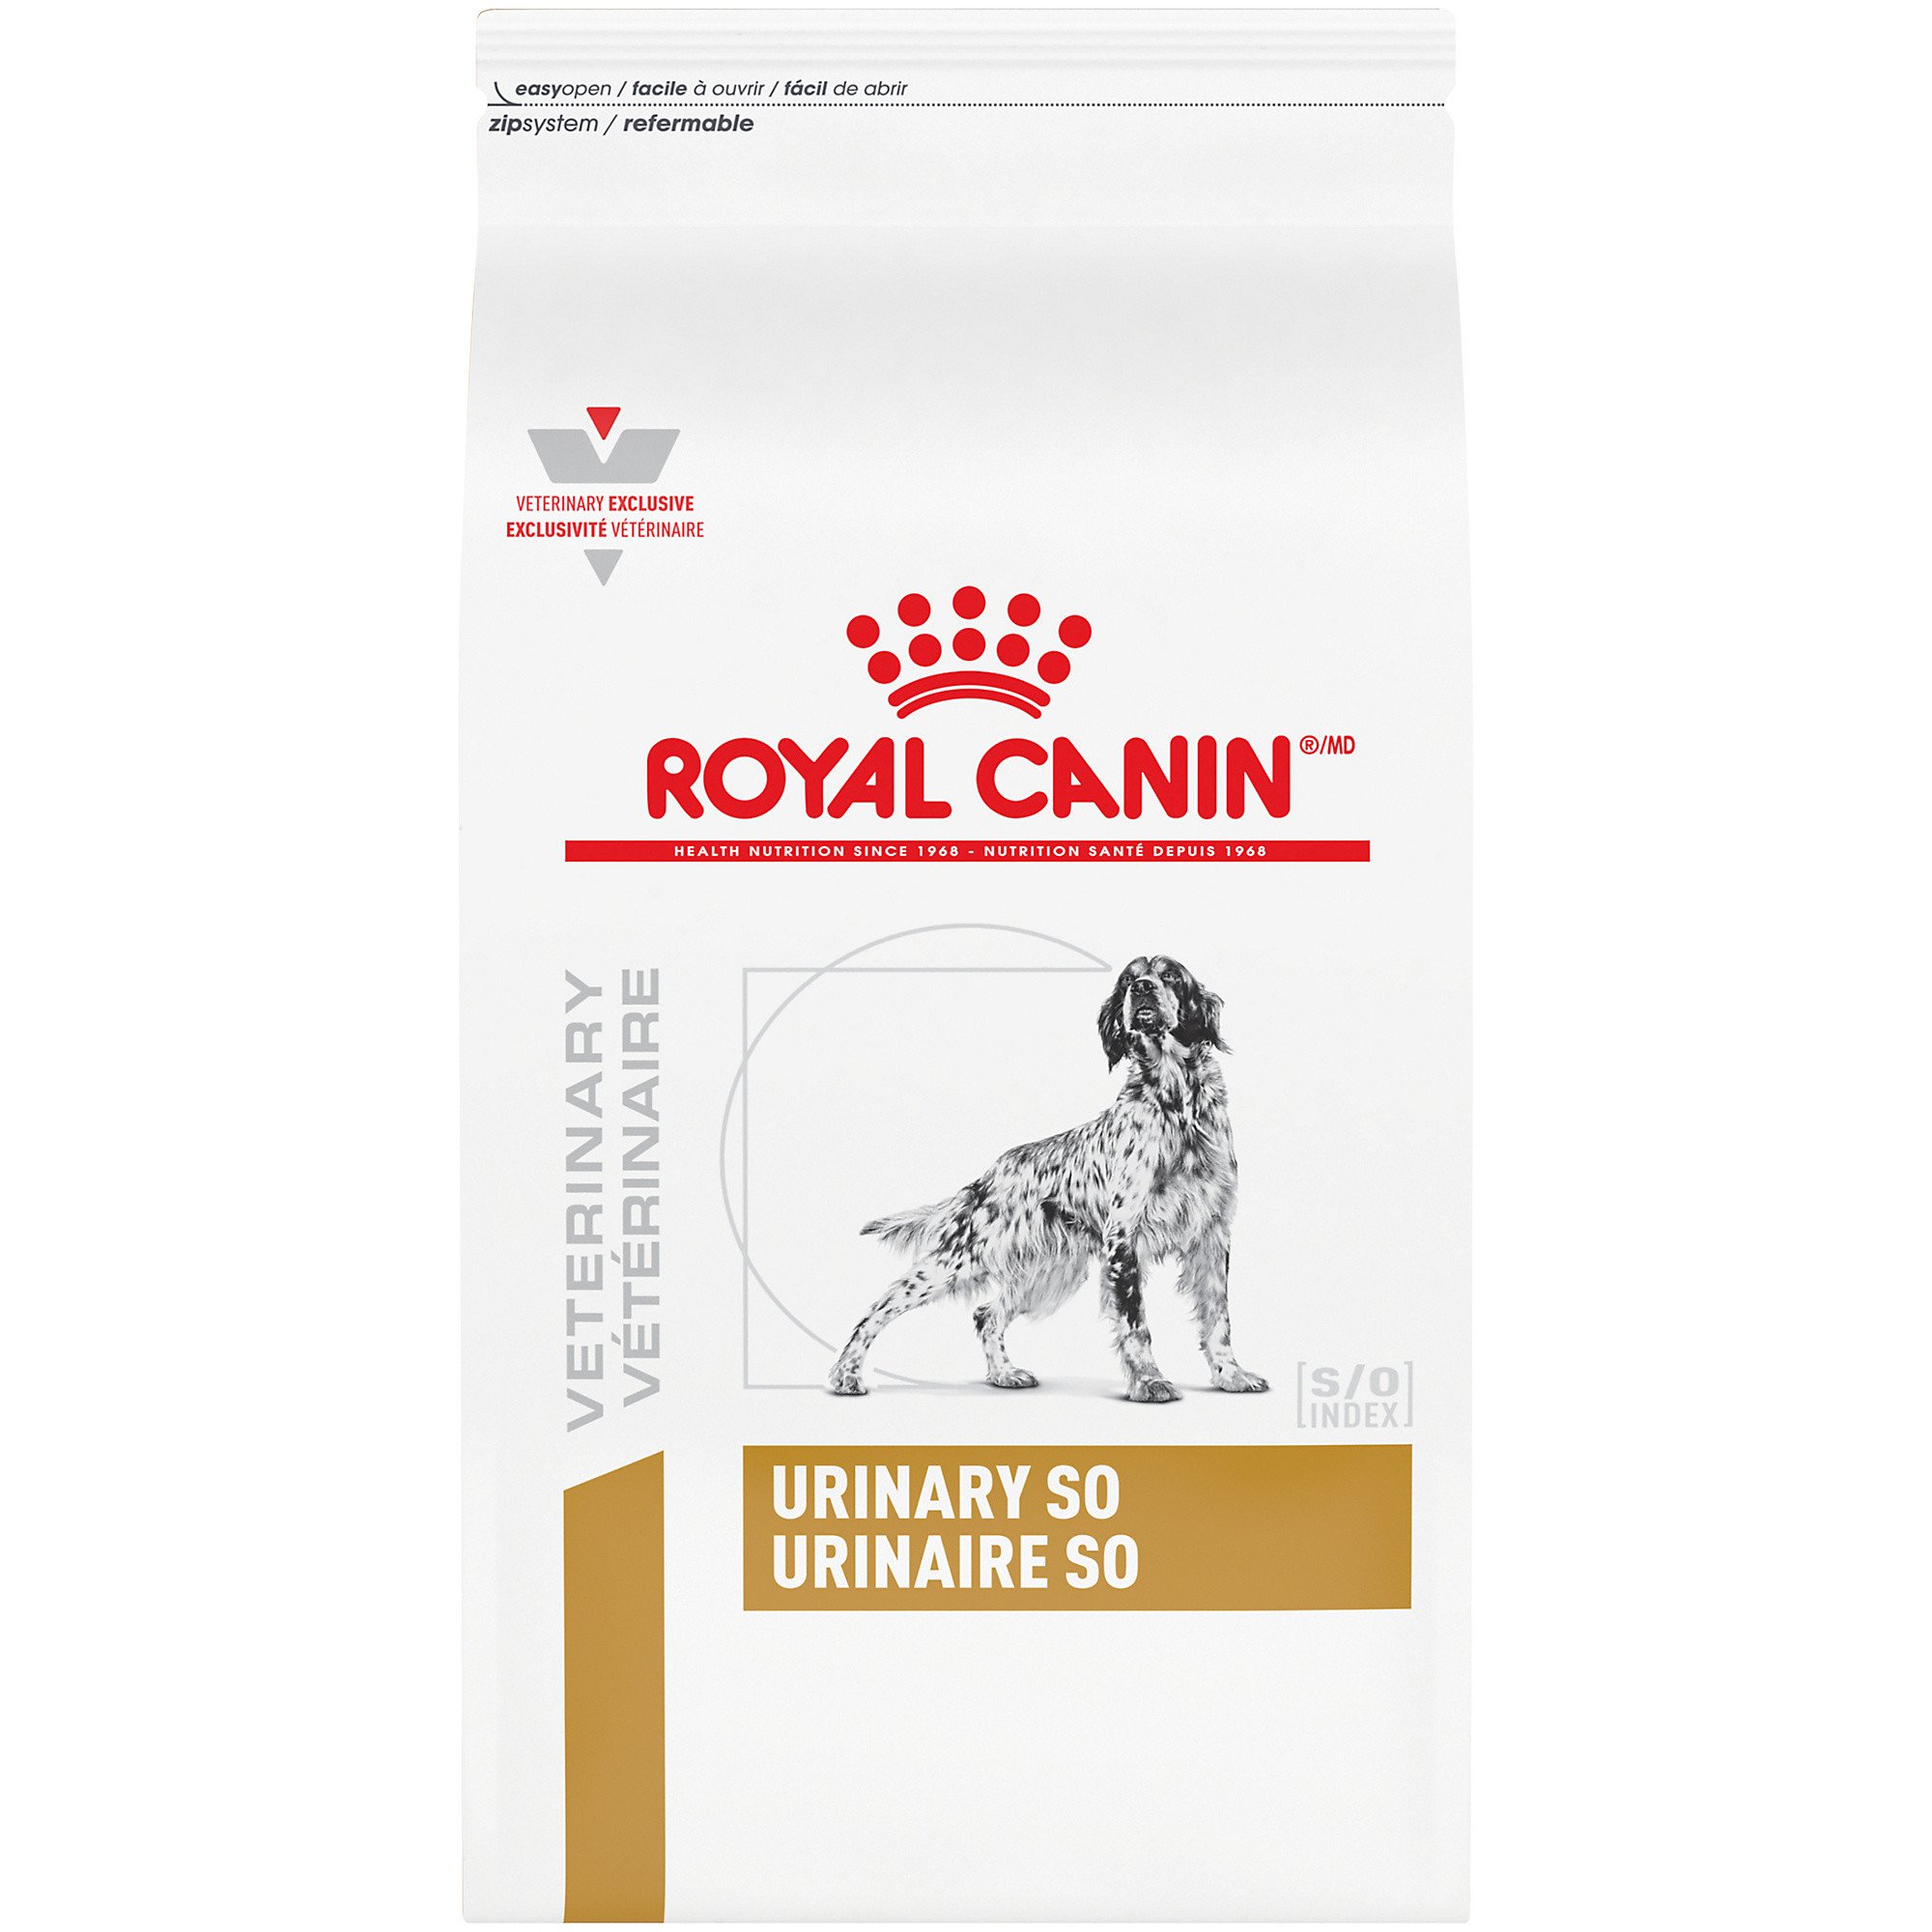 Royal Canin Pug Food Pets At Home